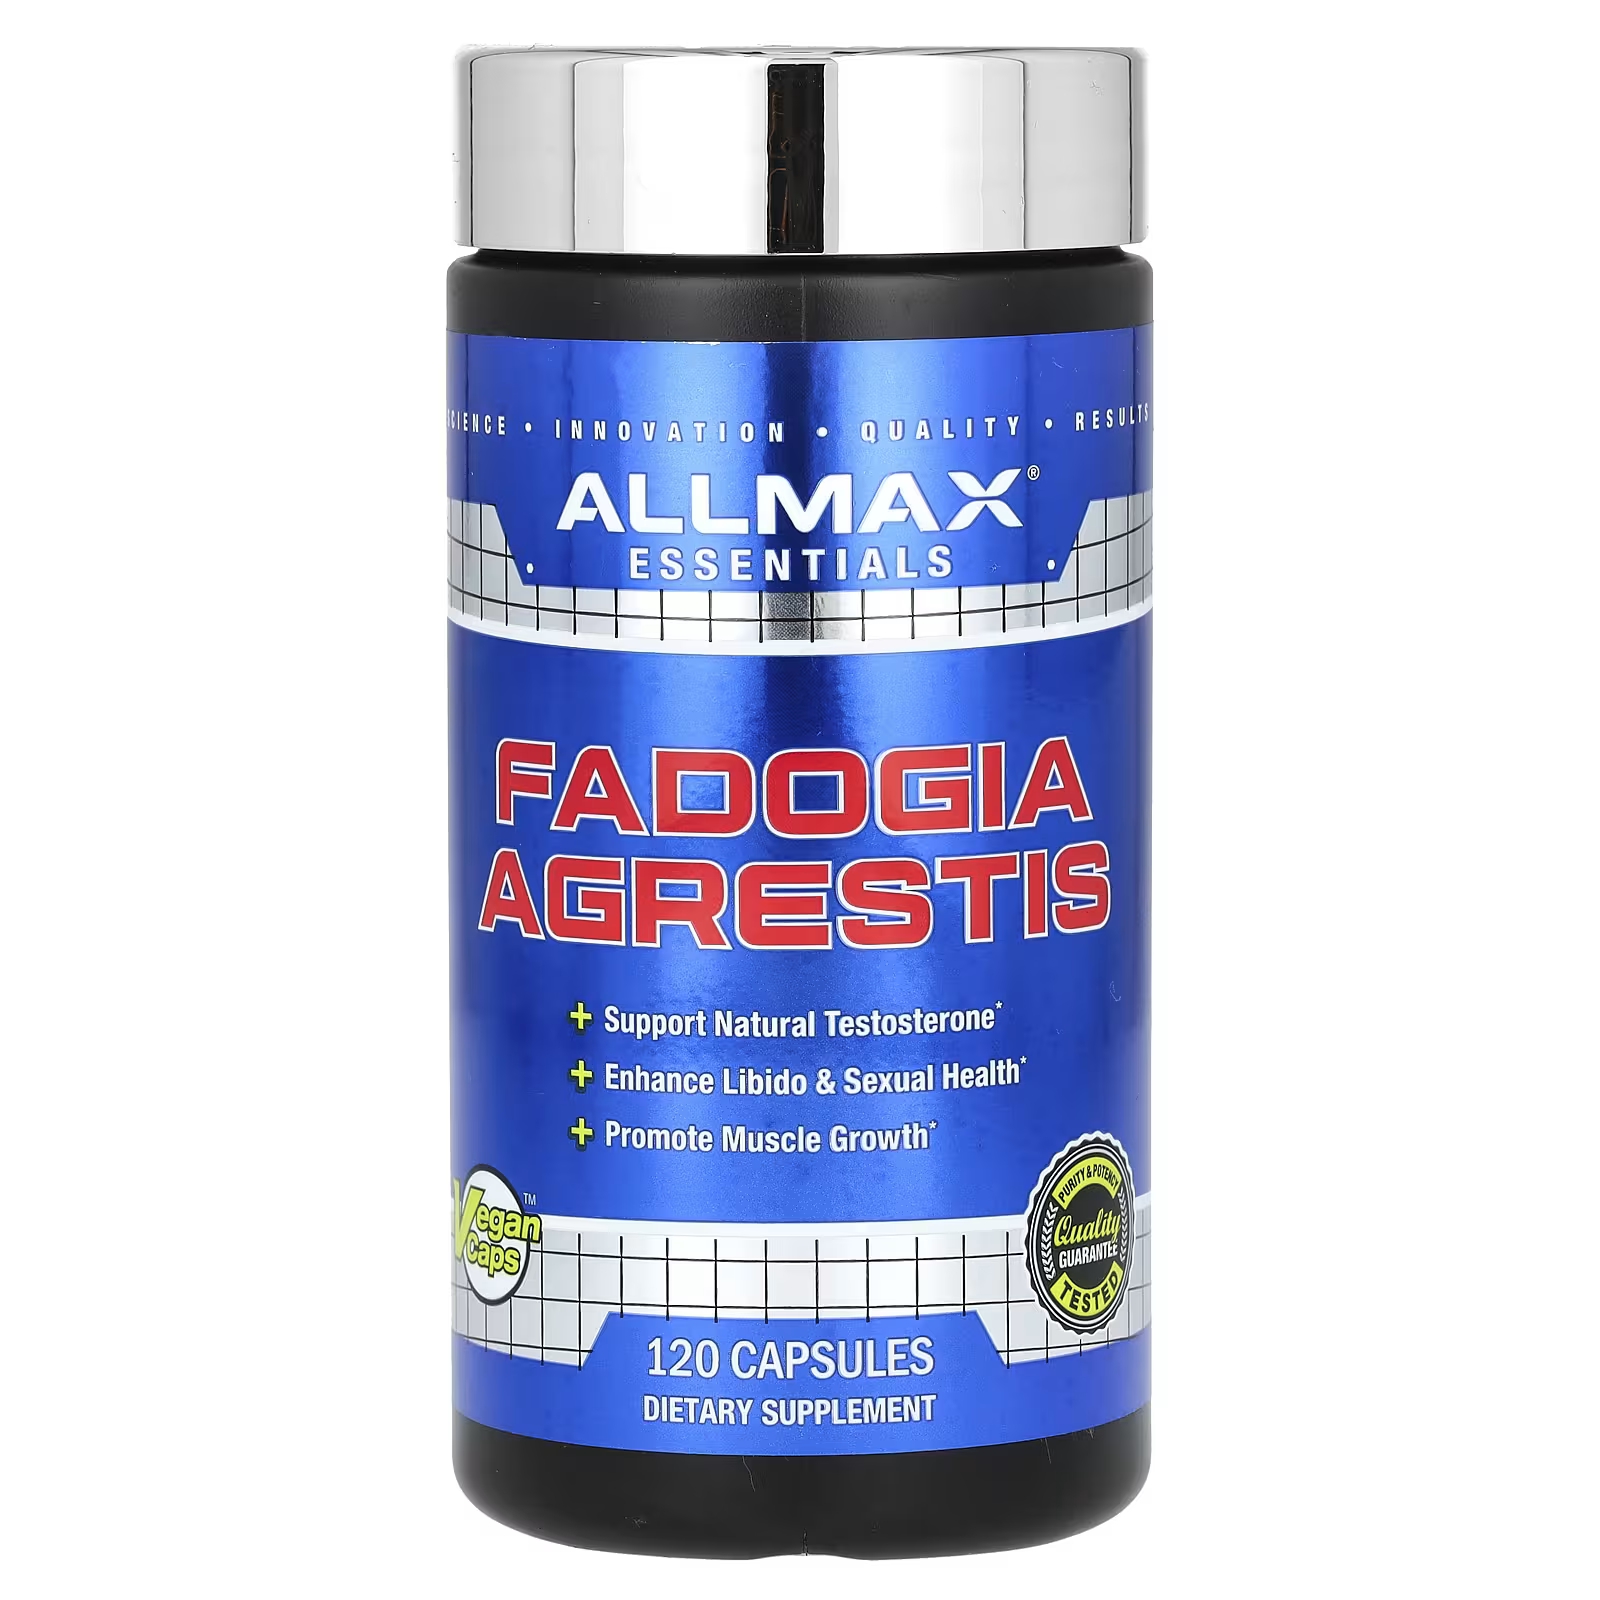 Пищевая добавка AllMax Essentials Fadogia Agrestis, 120 капсул